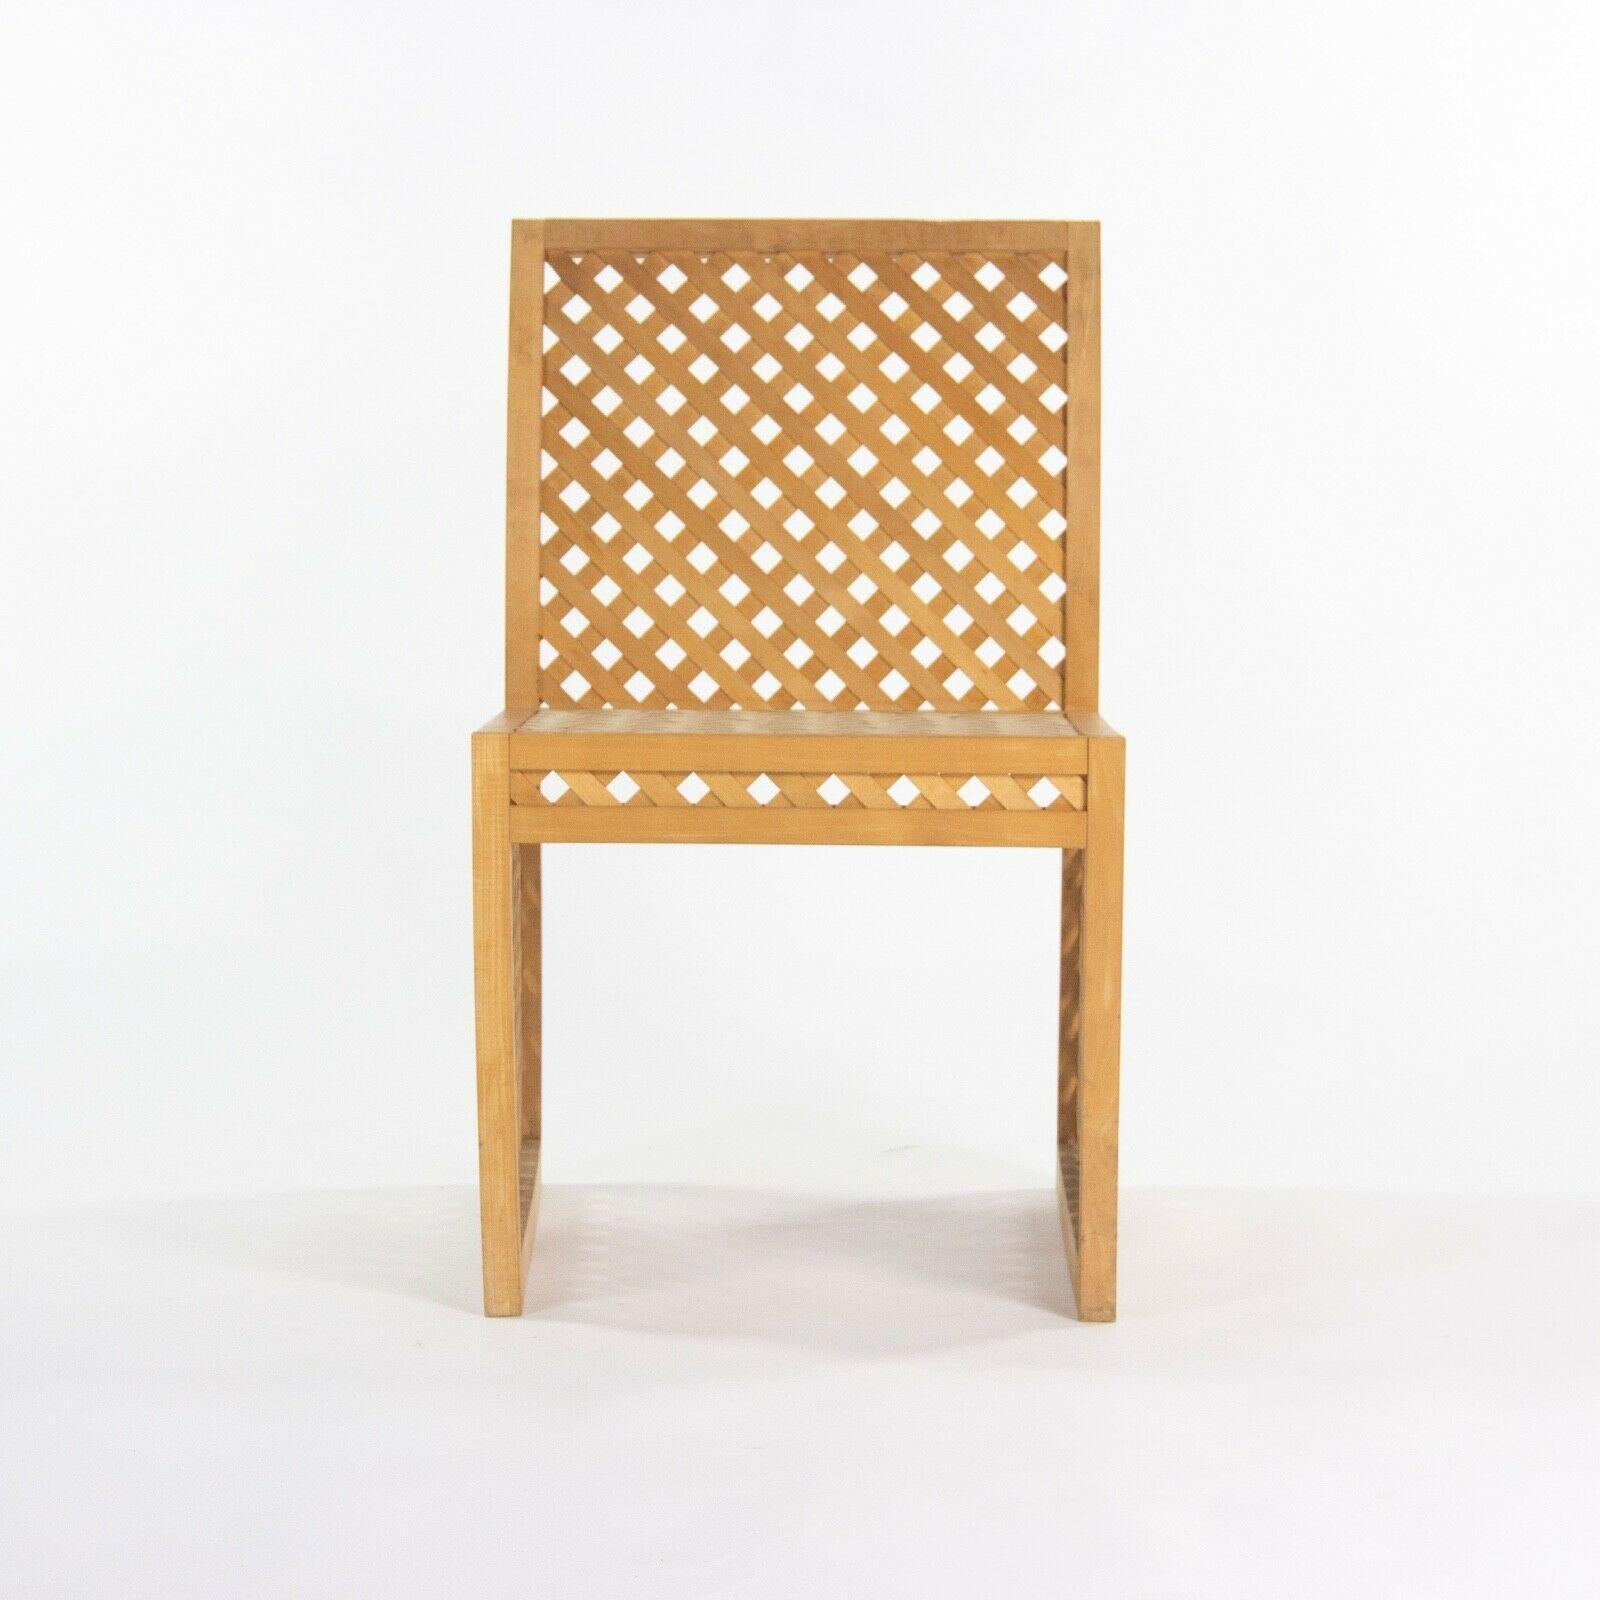 Nous proposons à la vente un prototype de chaise de salle à manger de la Collection Sultz en bois pour l'extérieur, datant d'environ 1985. Il s'agit d'un exemple merveilleux et rare. Le cadre est en très bon état avec quelques légères traces